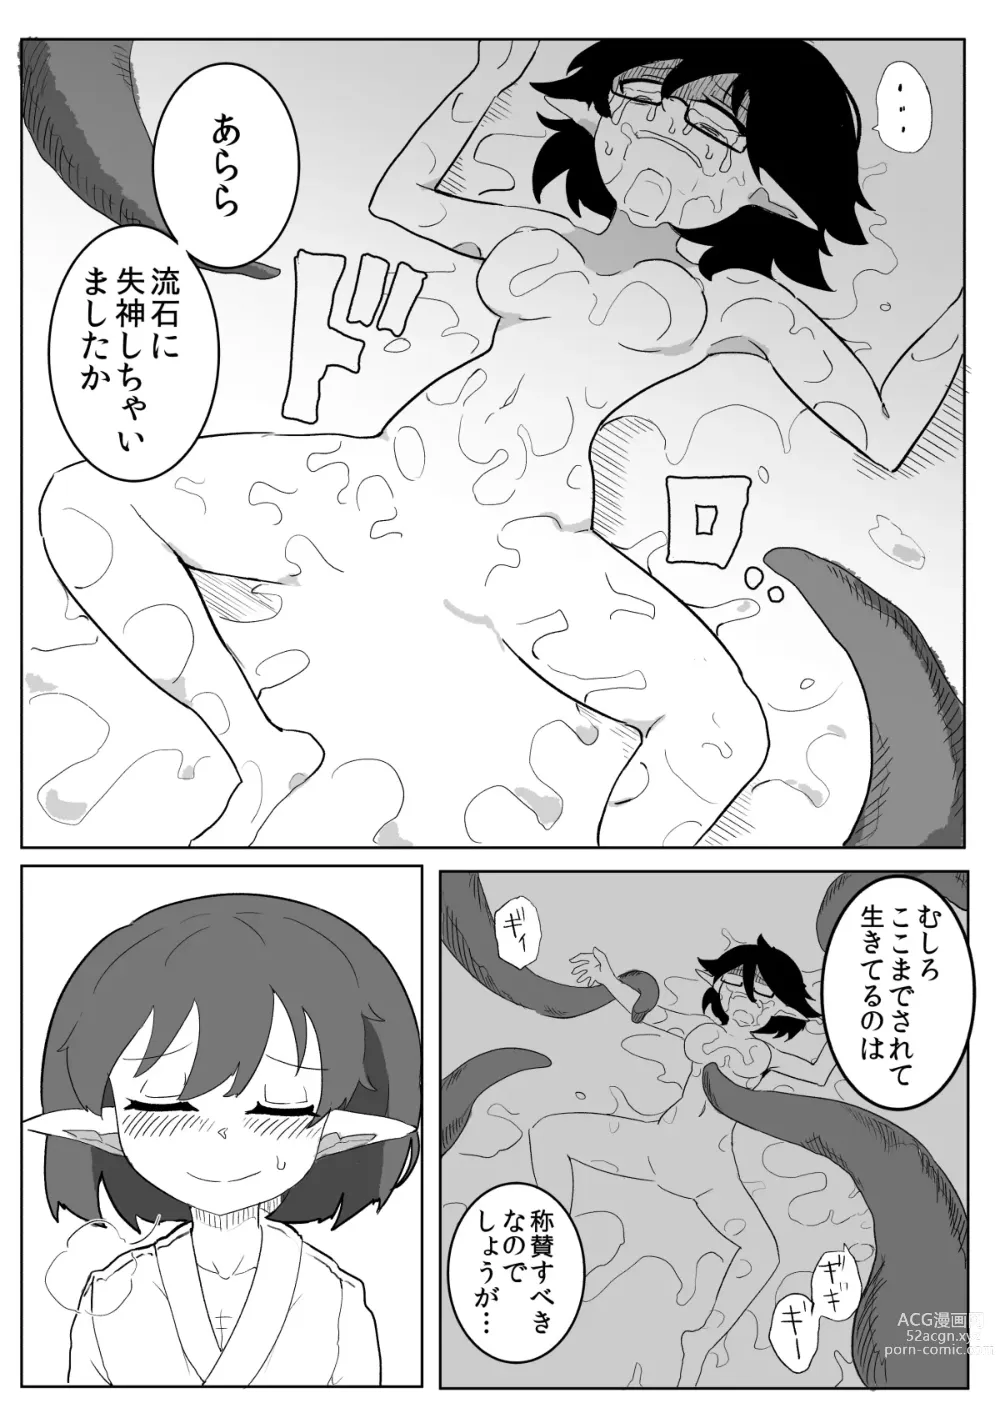 Page 49 of doujinshi Watashi to Shokushu no Kyuuryoubi 2